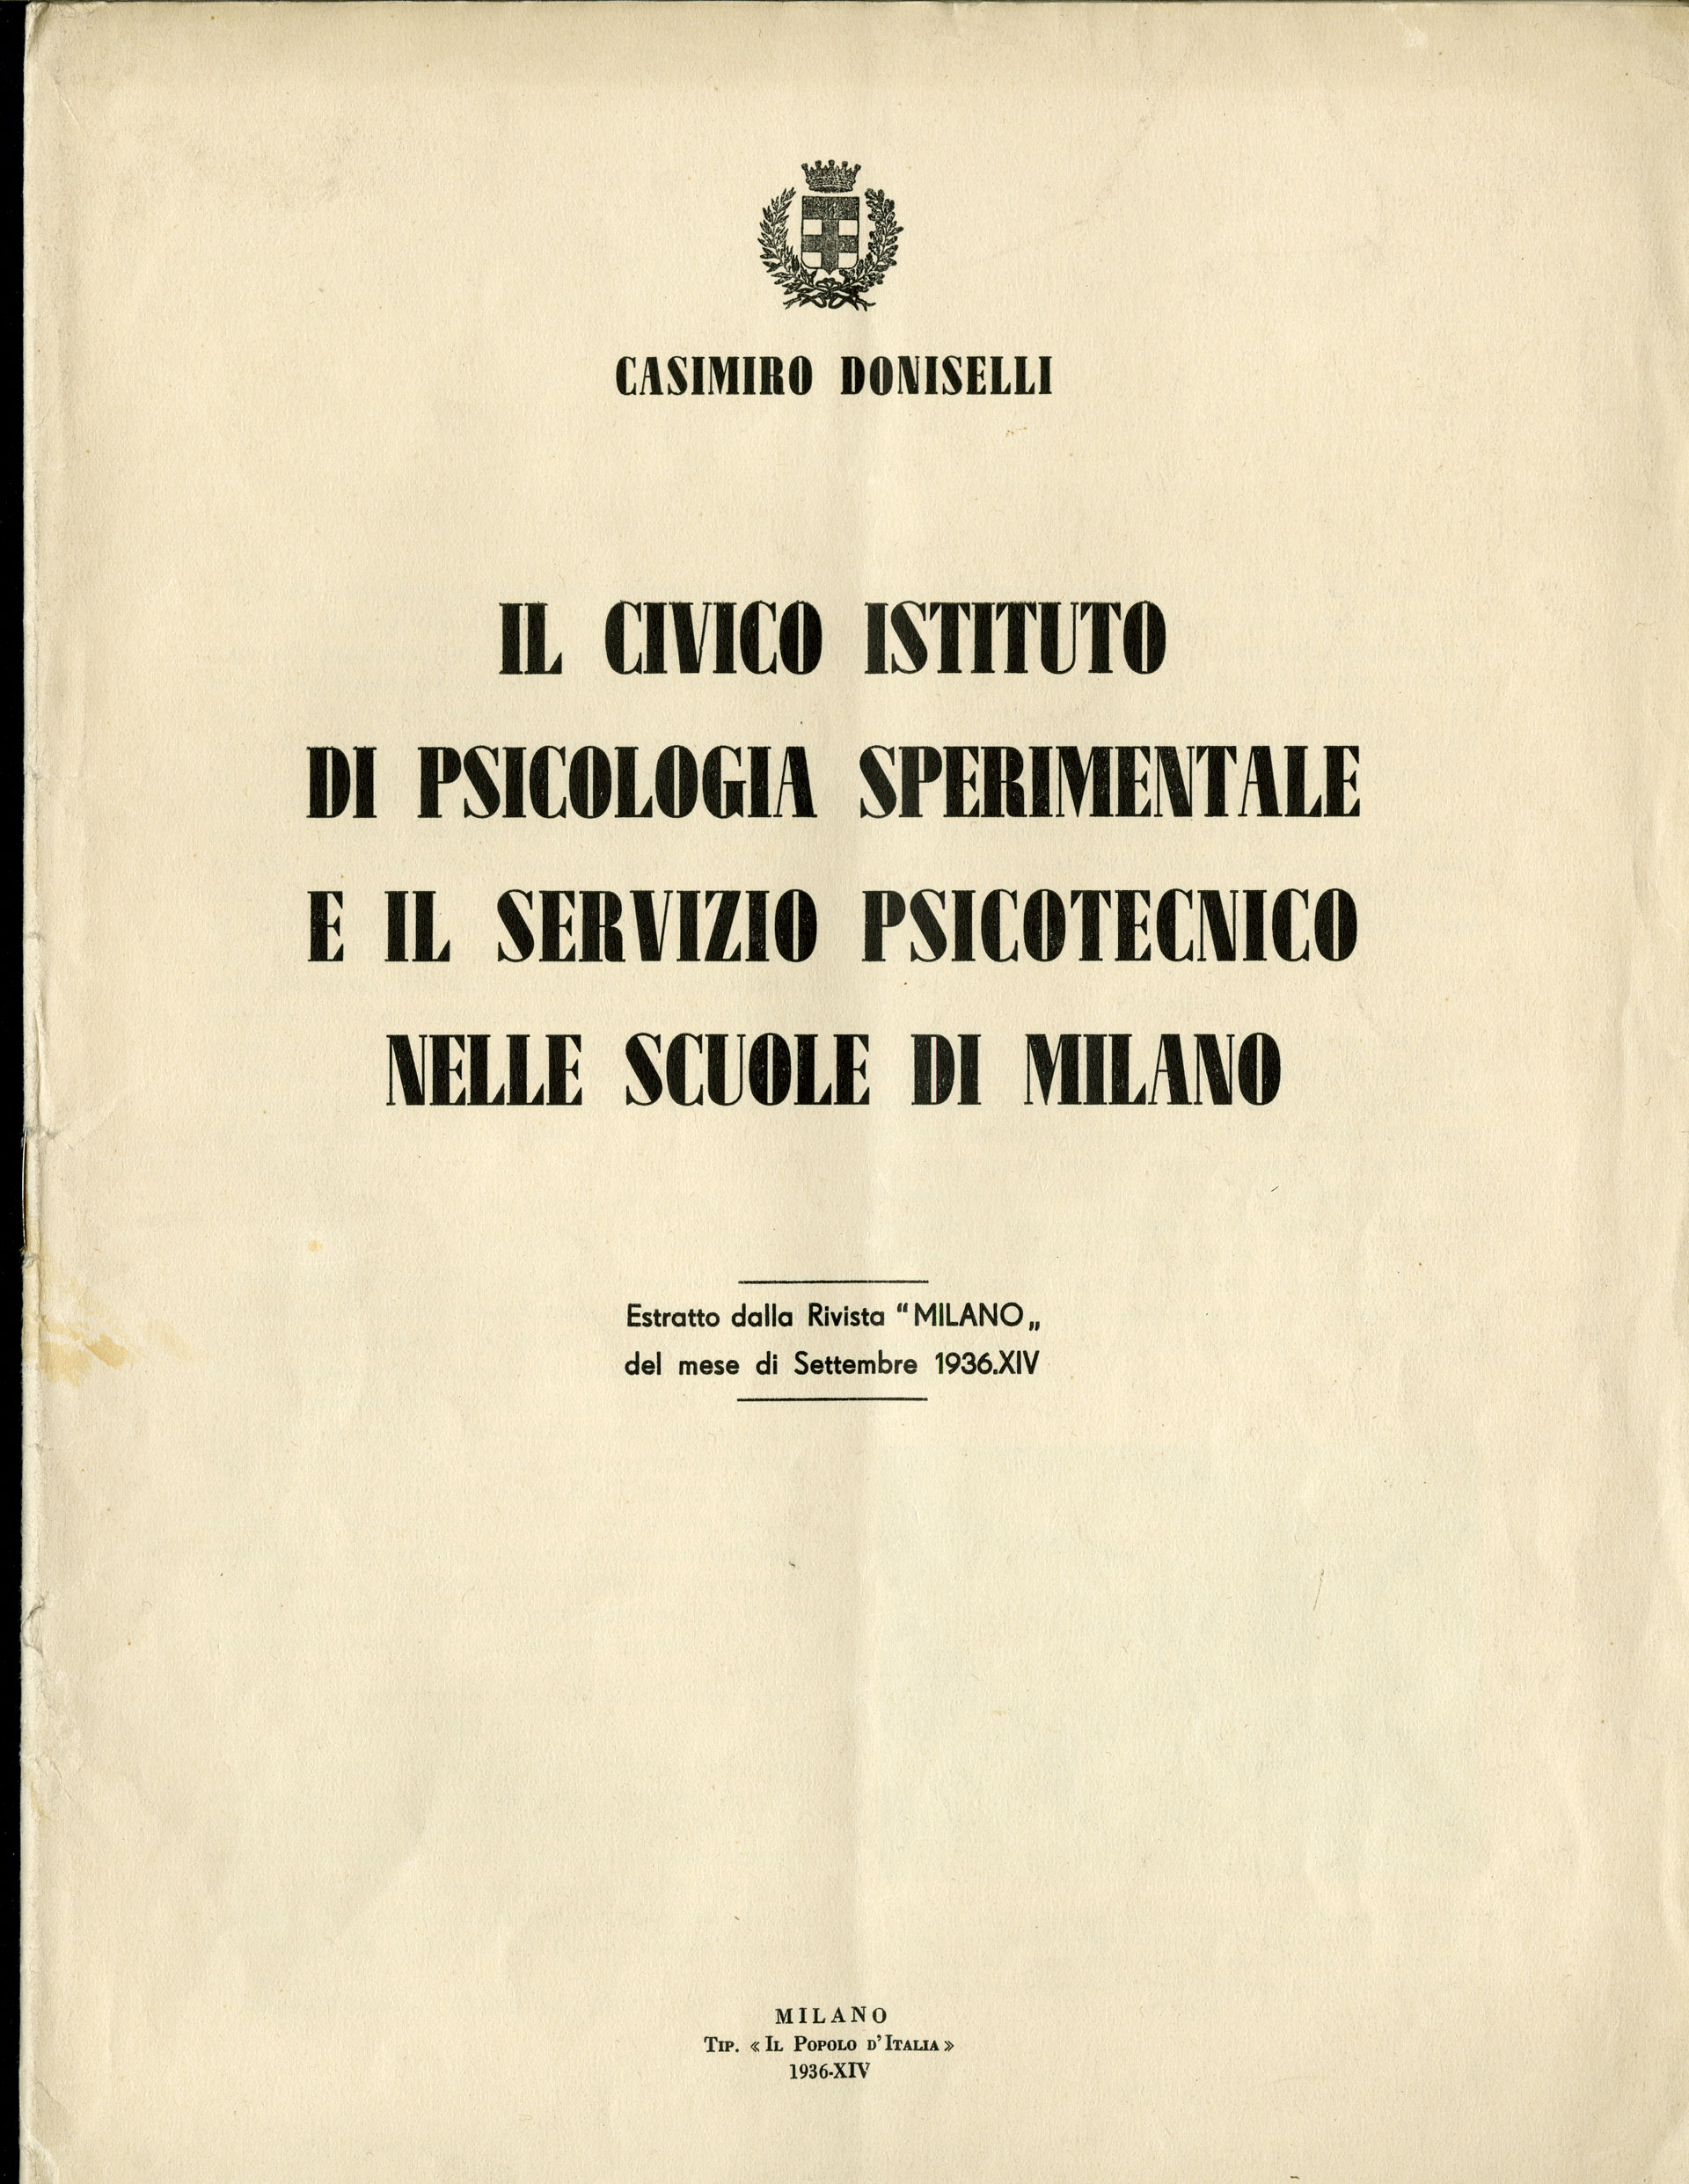 Casimiro Doniselli, Il Civico Istituto di Psicologia sperimentale e il servizio psicotecnico nelle scuole di Milano